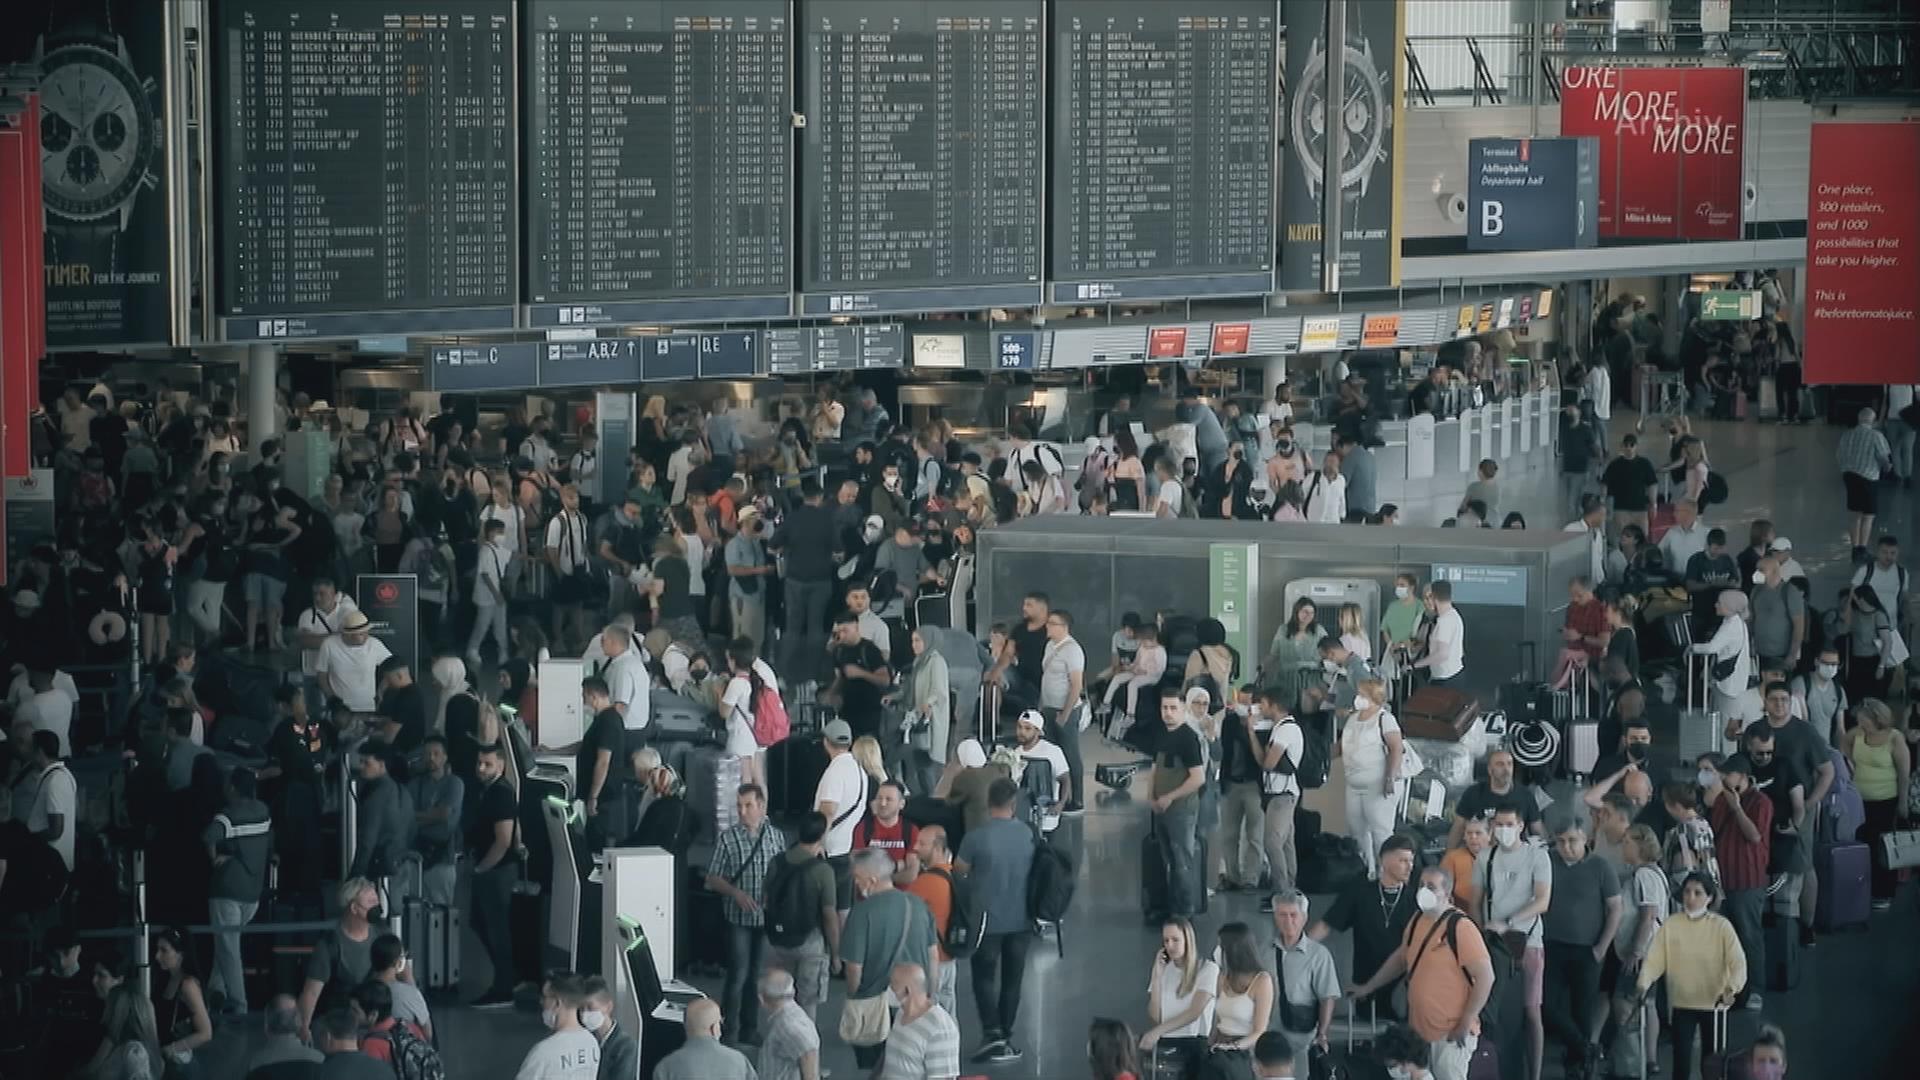 Auf dem Bild ist die Halle des Frankfurter Flughafens zu sehen.